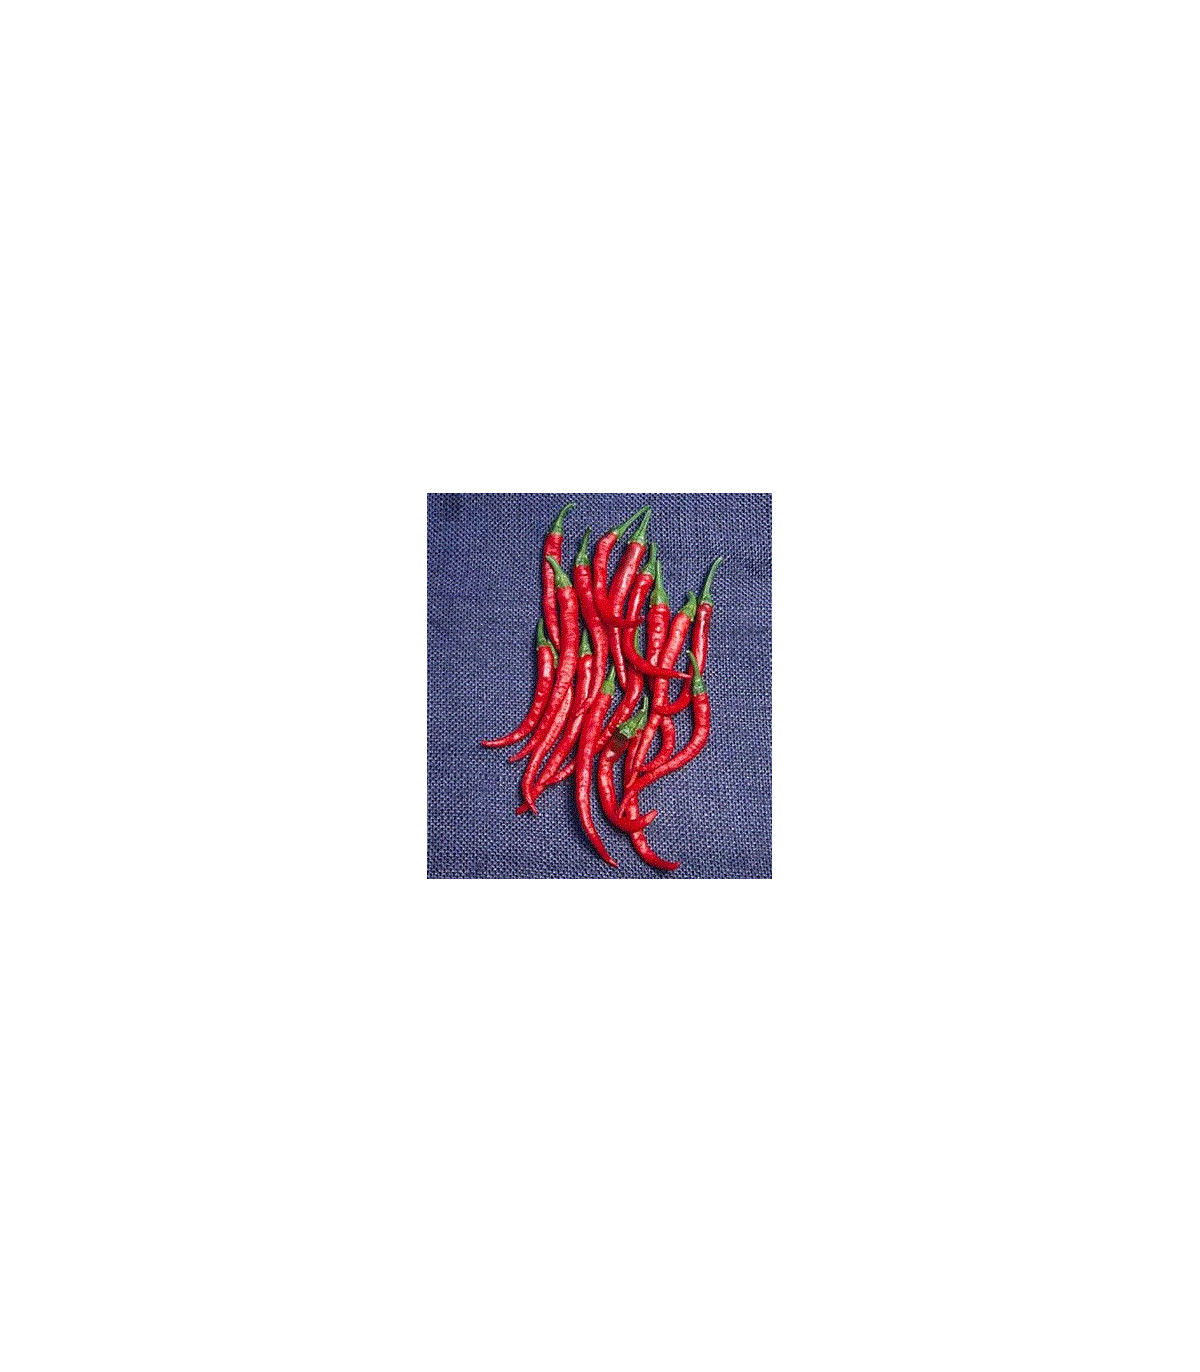 Kajenský peper - Cayenne pepper - EXTRA dlhý - 6 ks